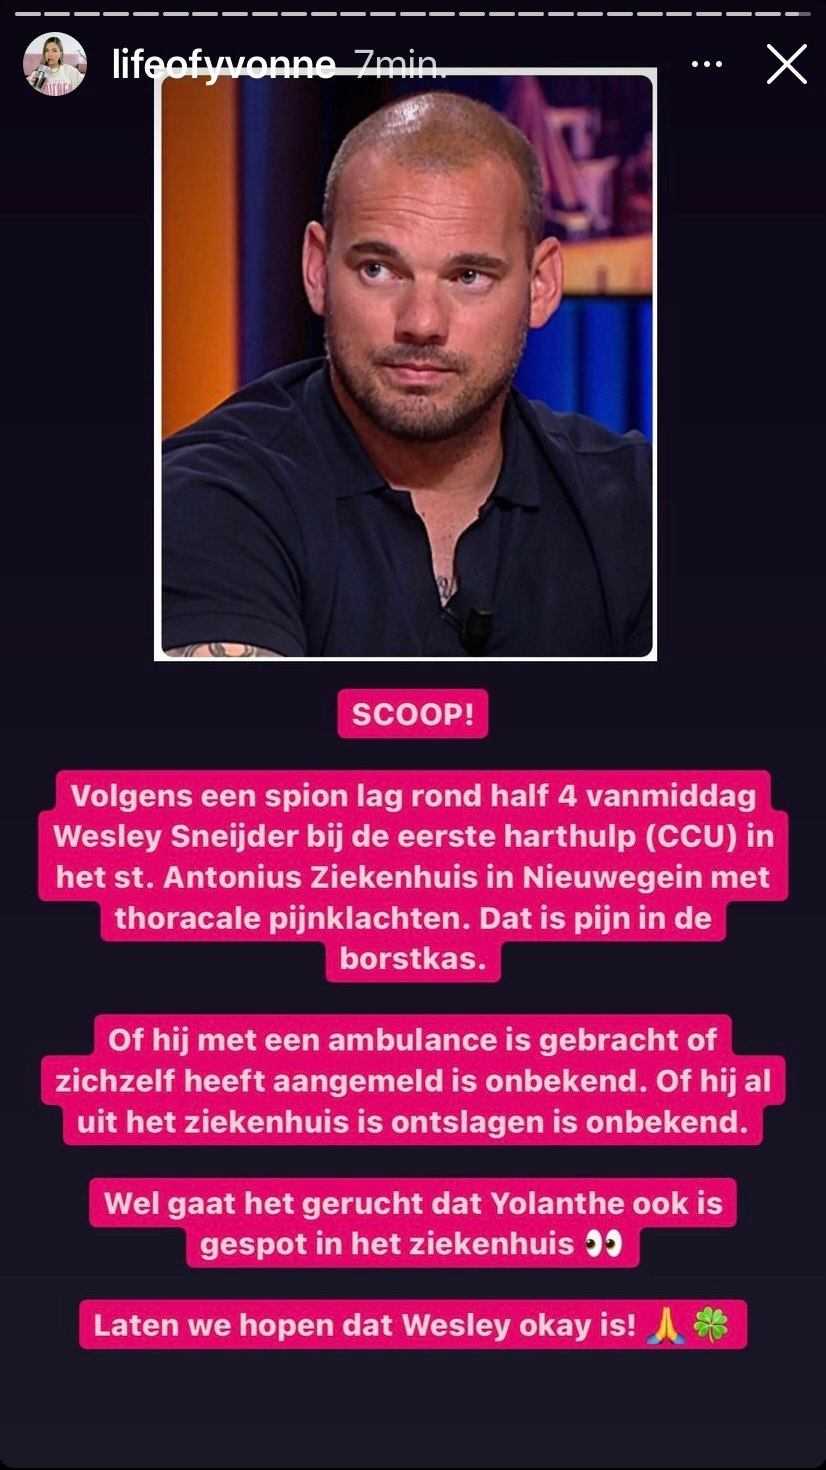 Wesley Sneijder naar het ziekenhuis